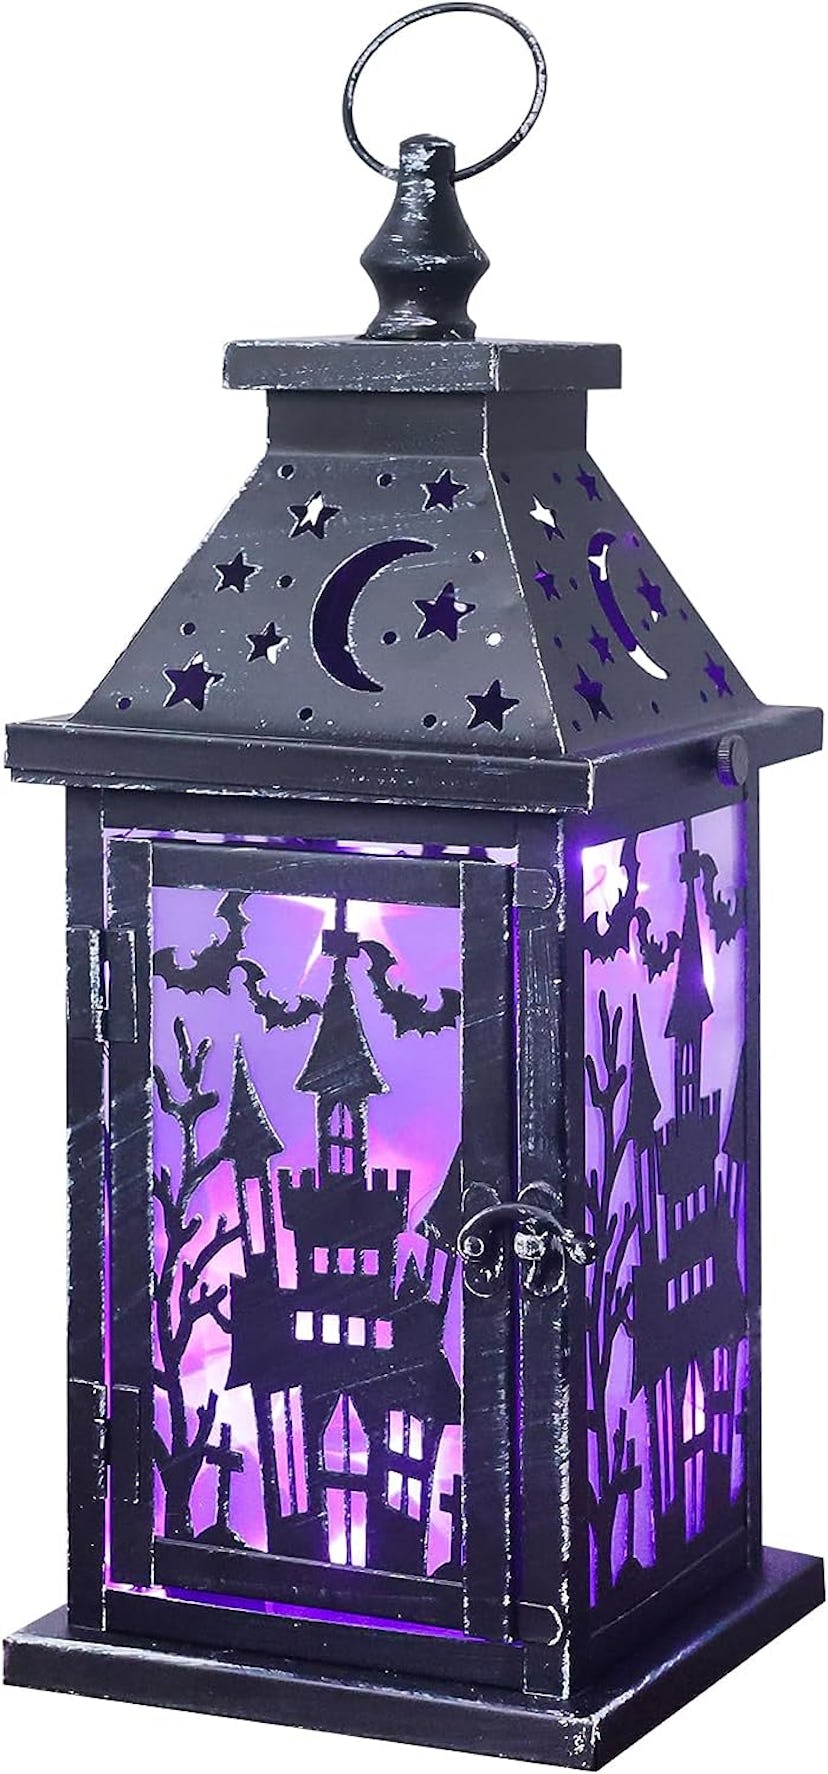 DECORKEY Decorative Haunted House Candle Lantern